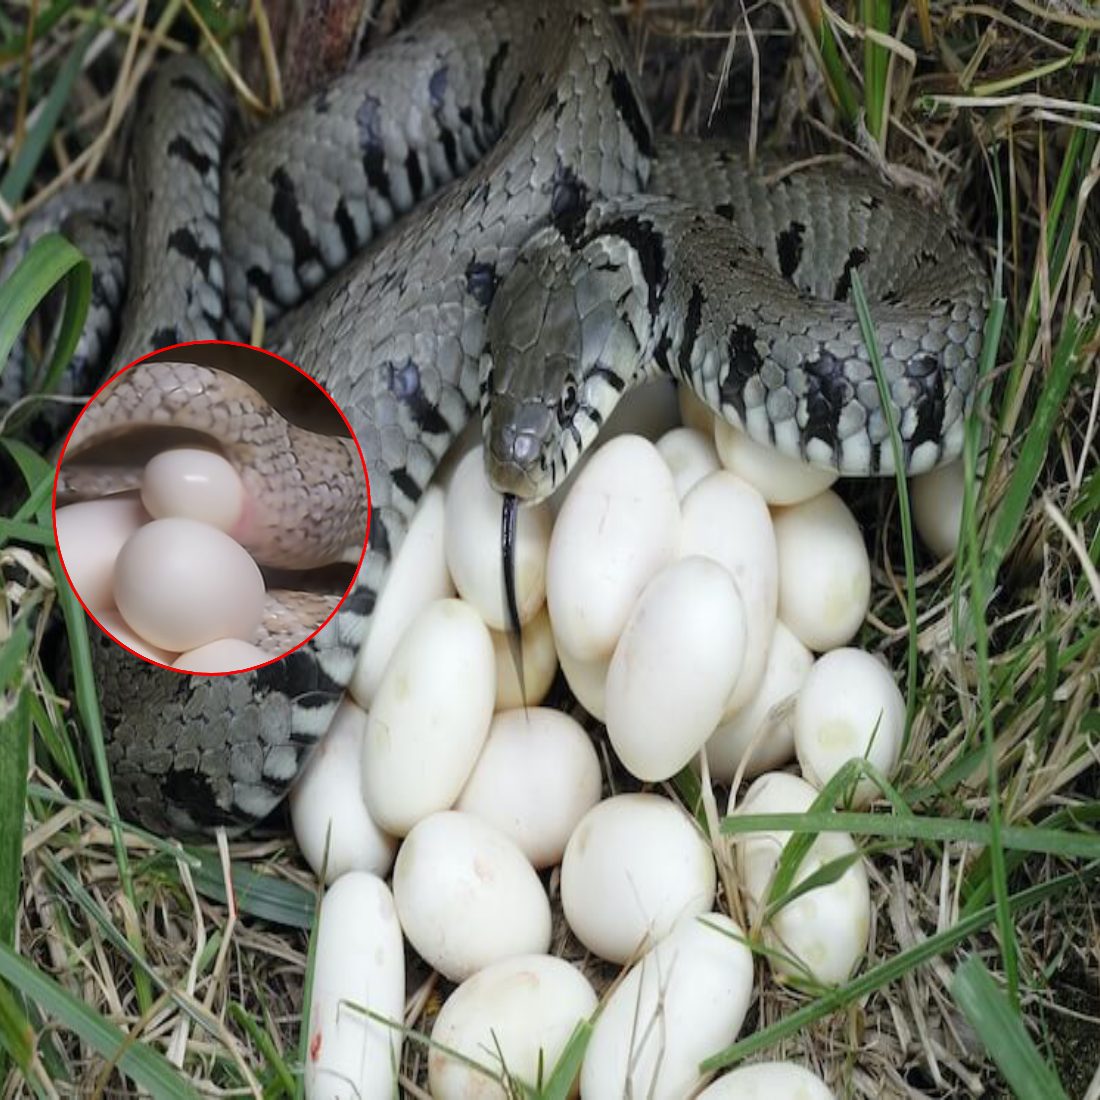 C'est merveilleux de voir le serpent des blés pondre à plusieurs reprises des dizaines d'œufs en quelques minutes (vidéo).